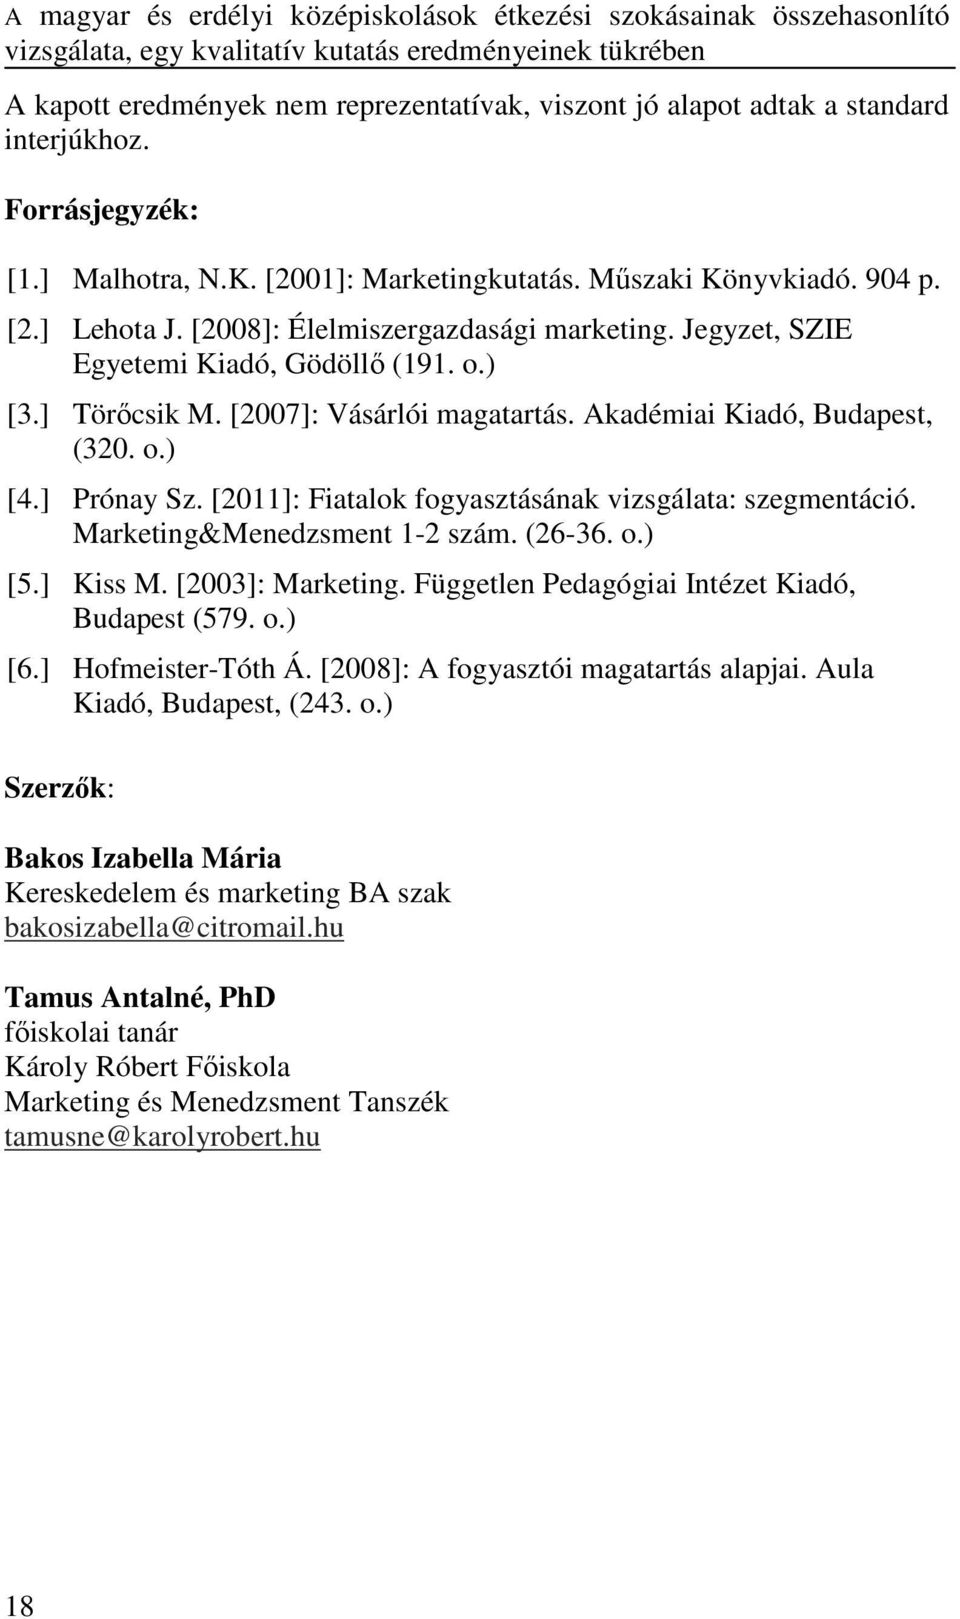 Jegyzet, SZIE Egyetemi Kiadó, Gödöllő (191. o.) [3.] Törőcsik M. [2007]: Vásárlói magatartás. Akadémiai Kiadó, Budapest, (320. o.) [4.] Prónay Sz.